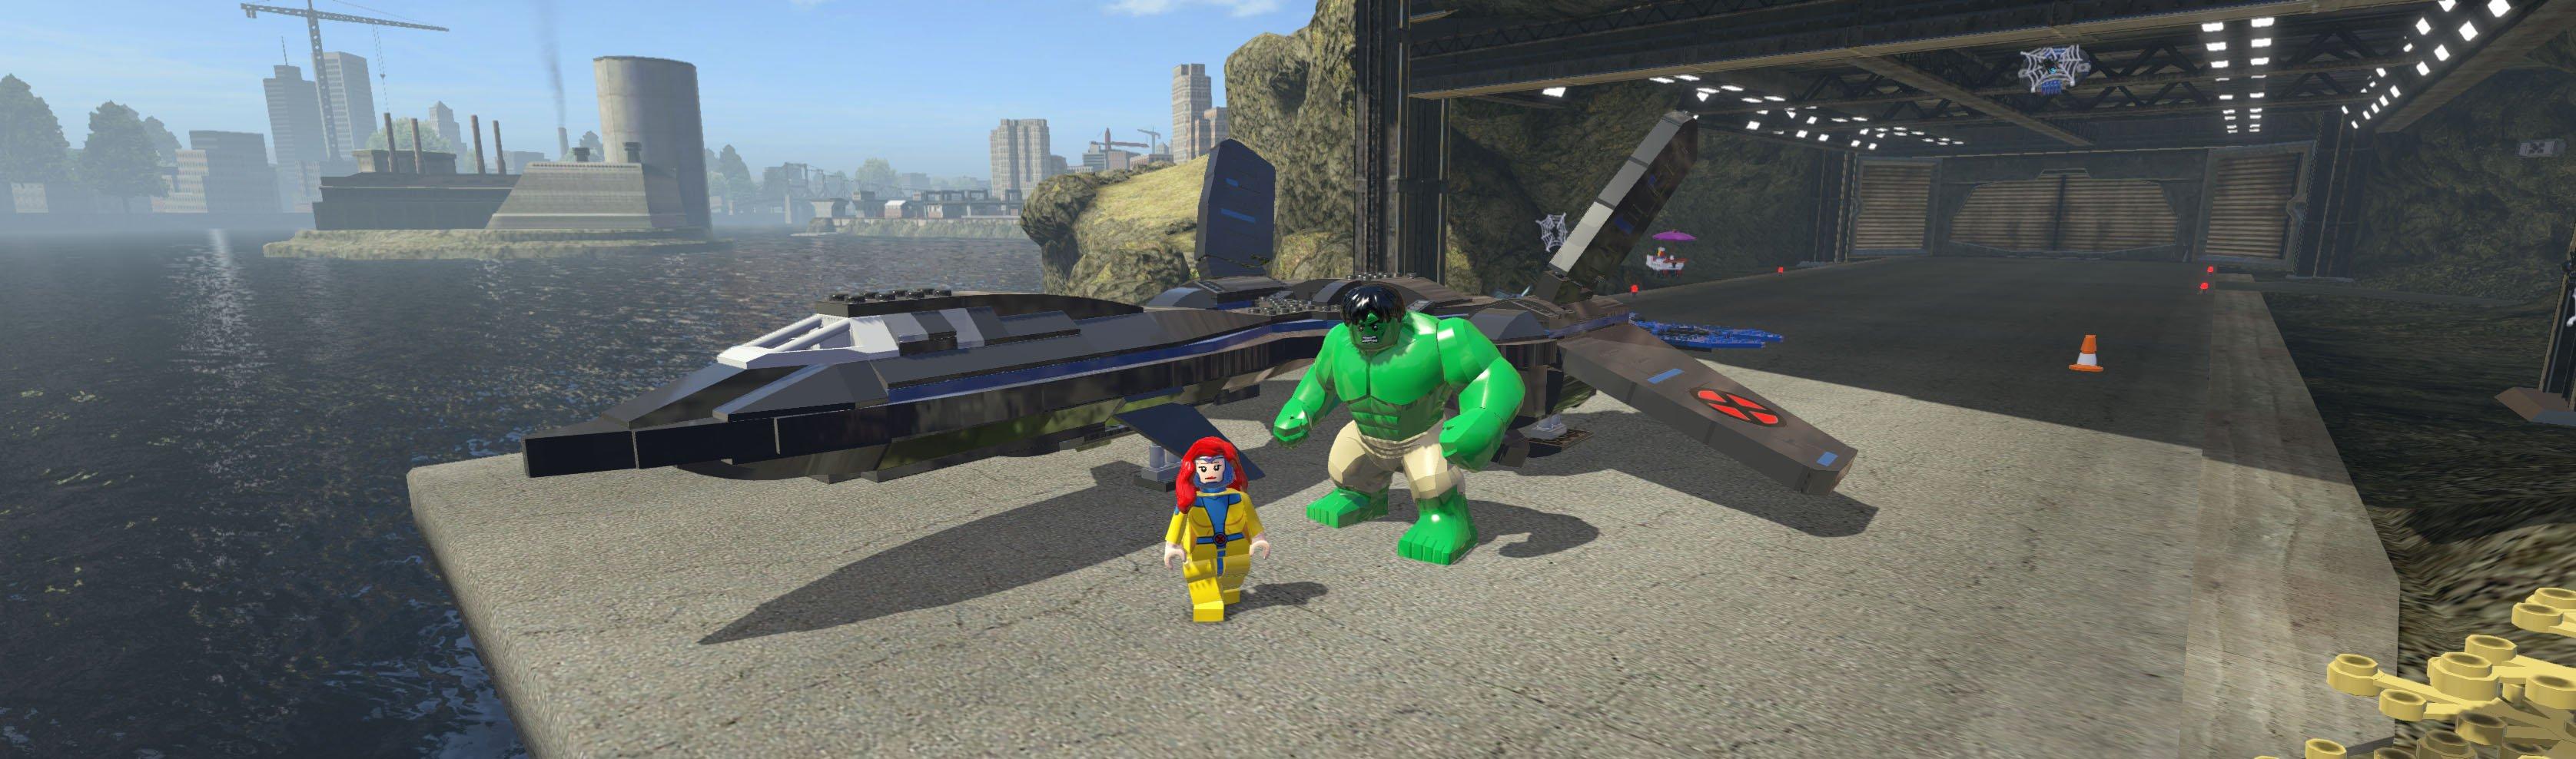 LEGO Marvel Super Heroes - Nintendo 3DS | Nintendo 3DS | GameStop